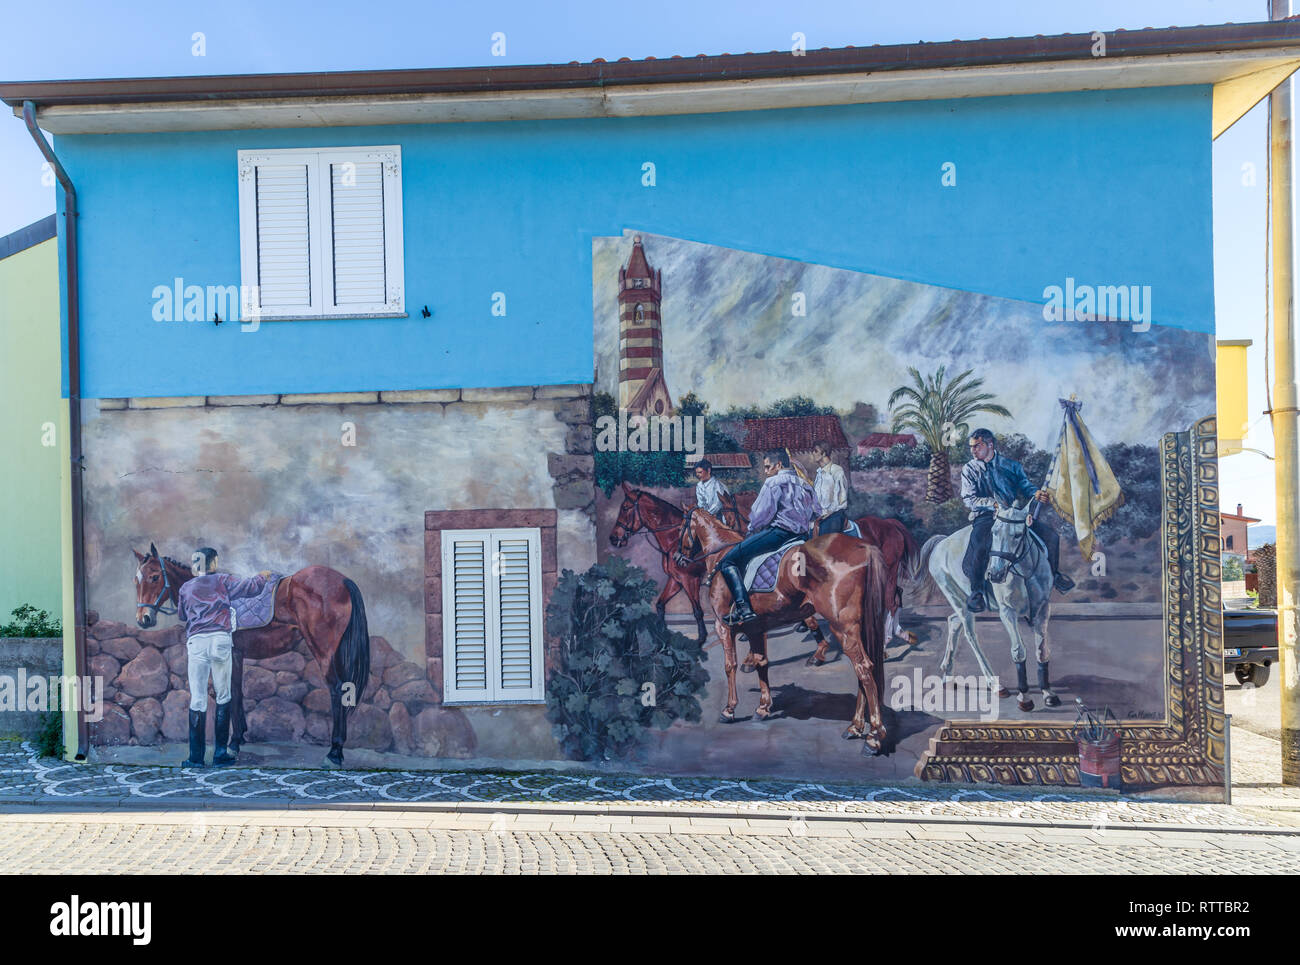 Sardegna Italia su dicembre 27, 2019: murales dipinti sulle case per le strade di Tinnura raffiguranti momenti di zone rurali e la vita del villaggio Foto Stock